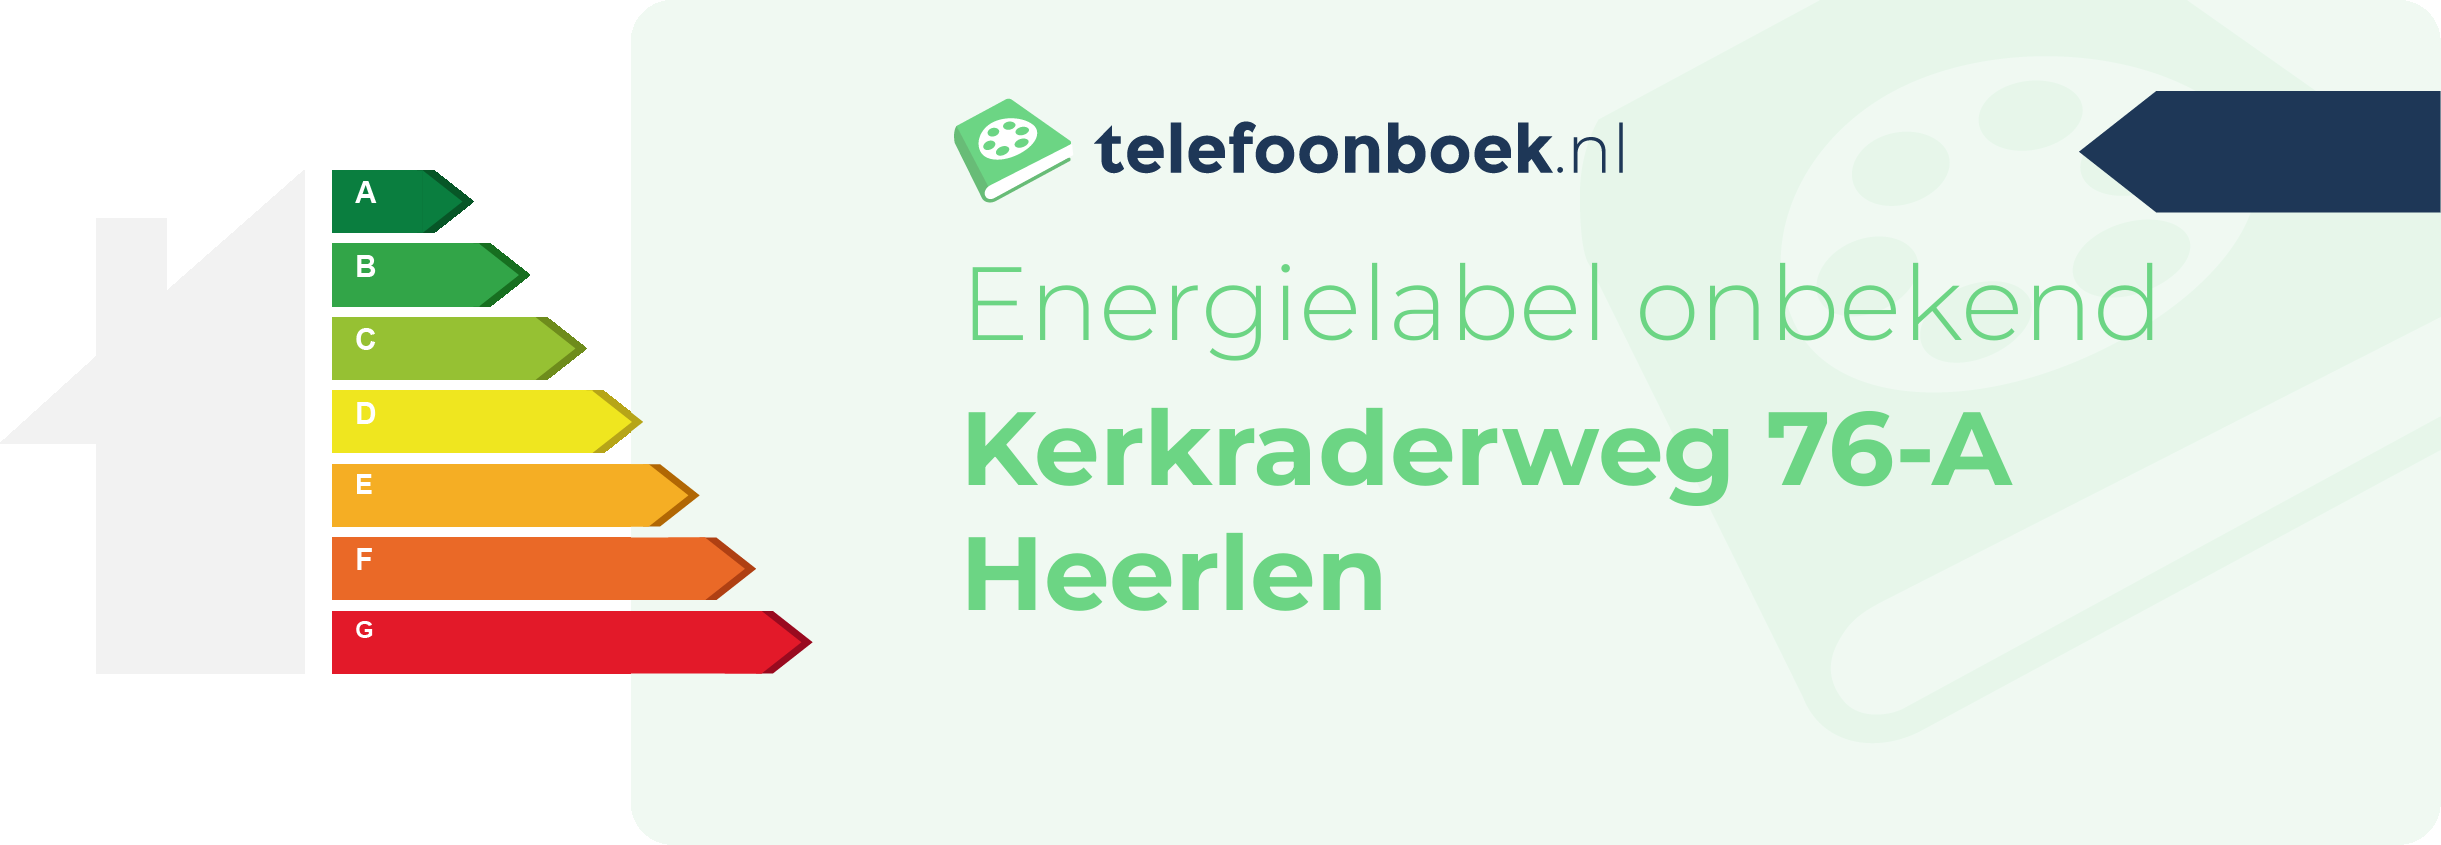 Energielabel Kerkraderweg 76-A Heerlen